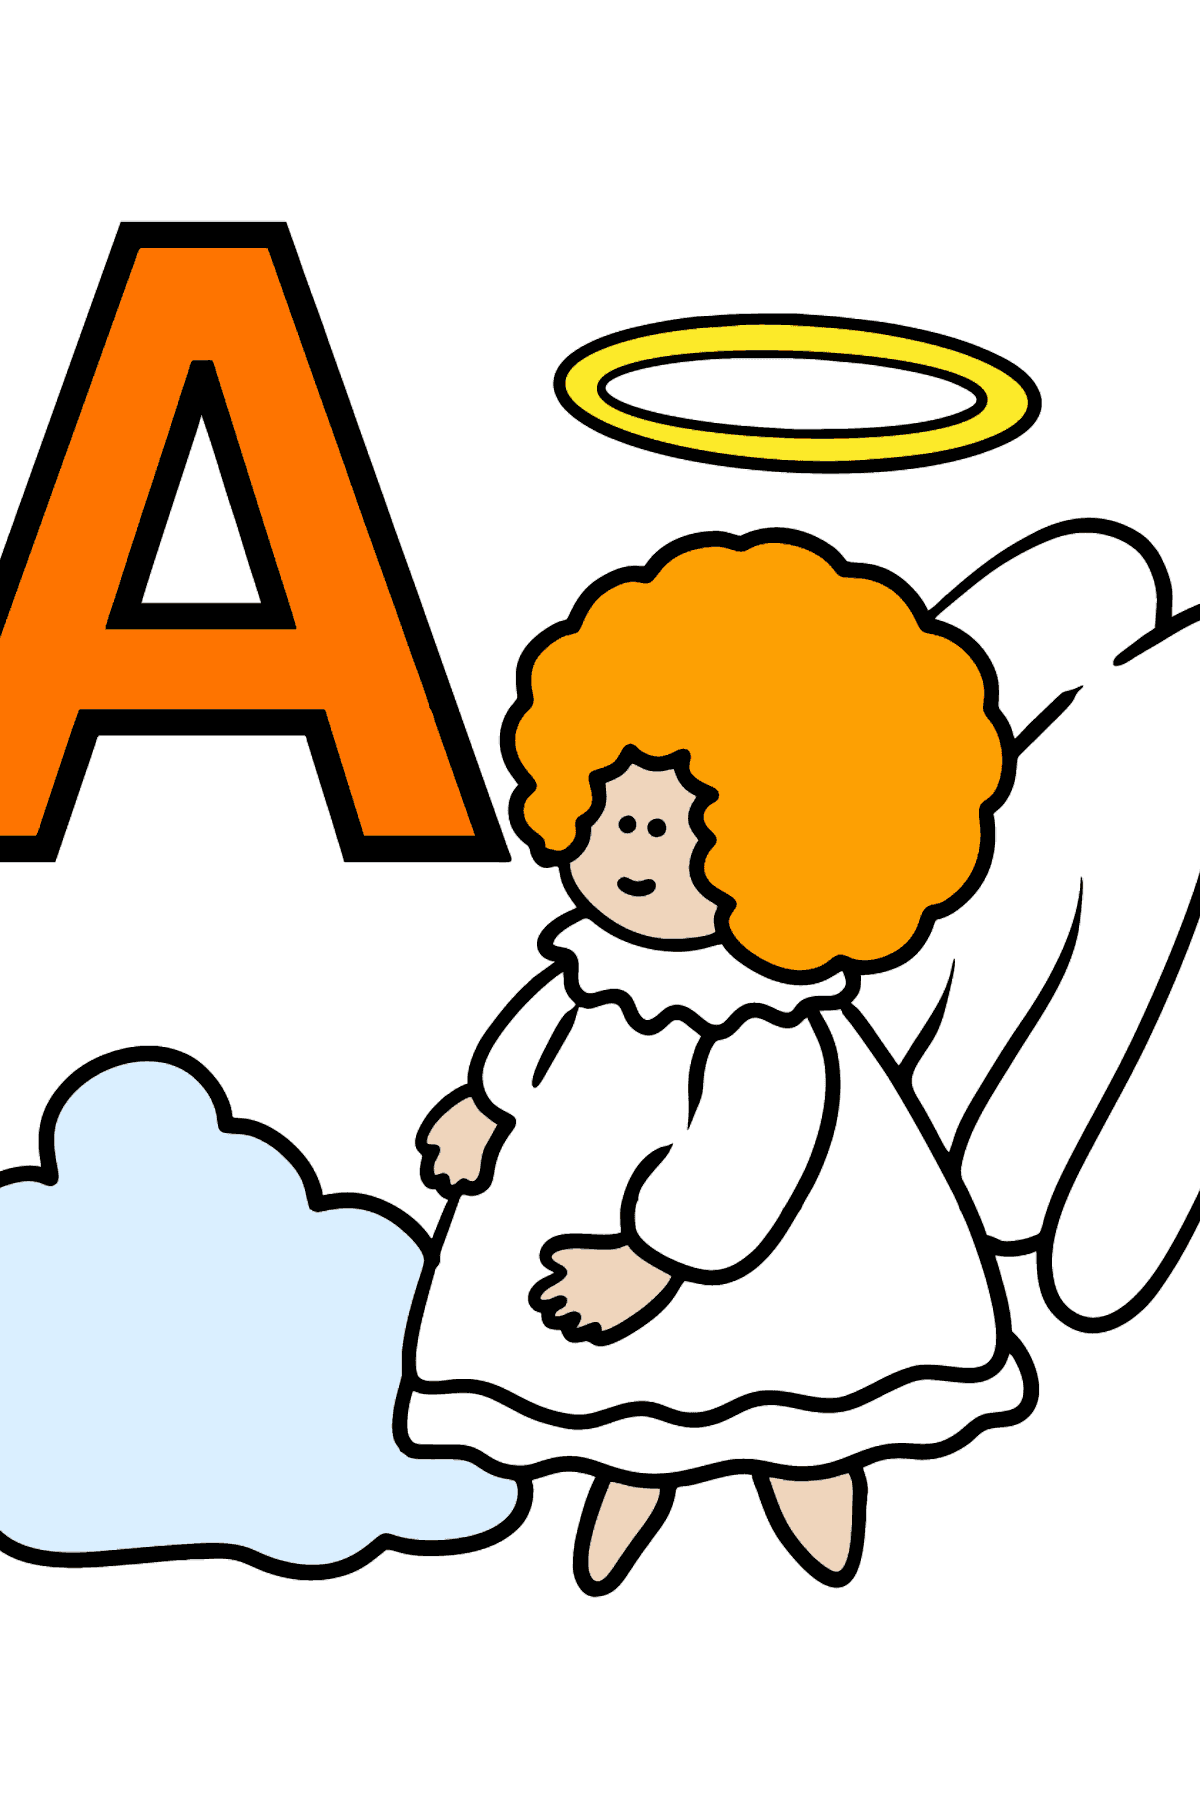 Dibujo de Letra A inglesa para colorear - ANGEL - Dibujos para Colorear para Niños